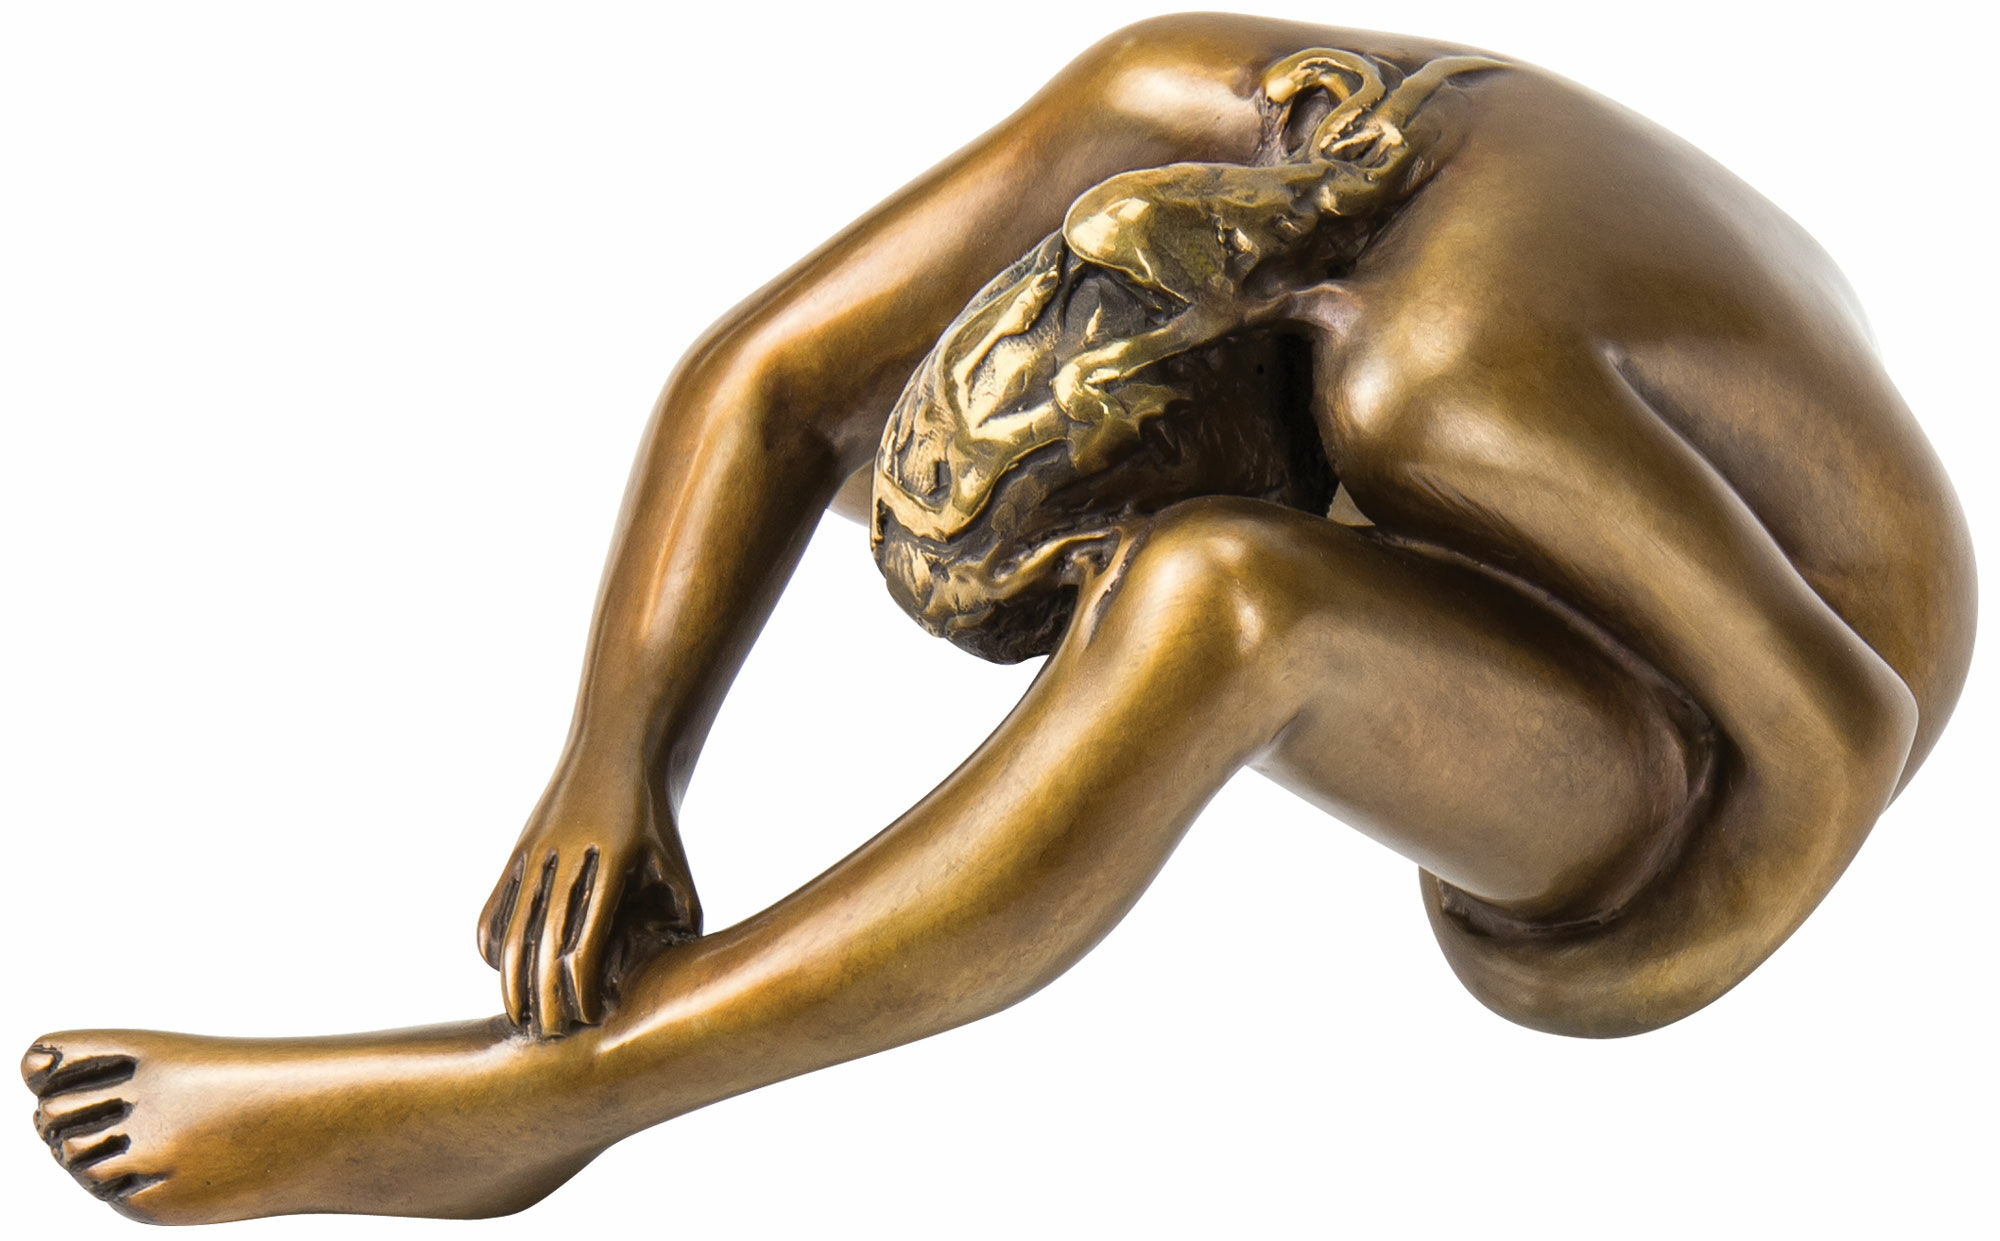 Sculpture "Innocentia", bronze by Bruno Bruni